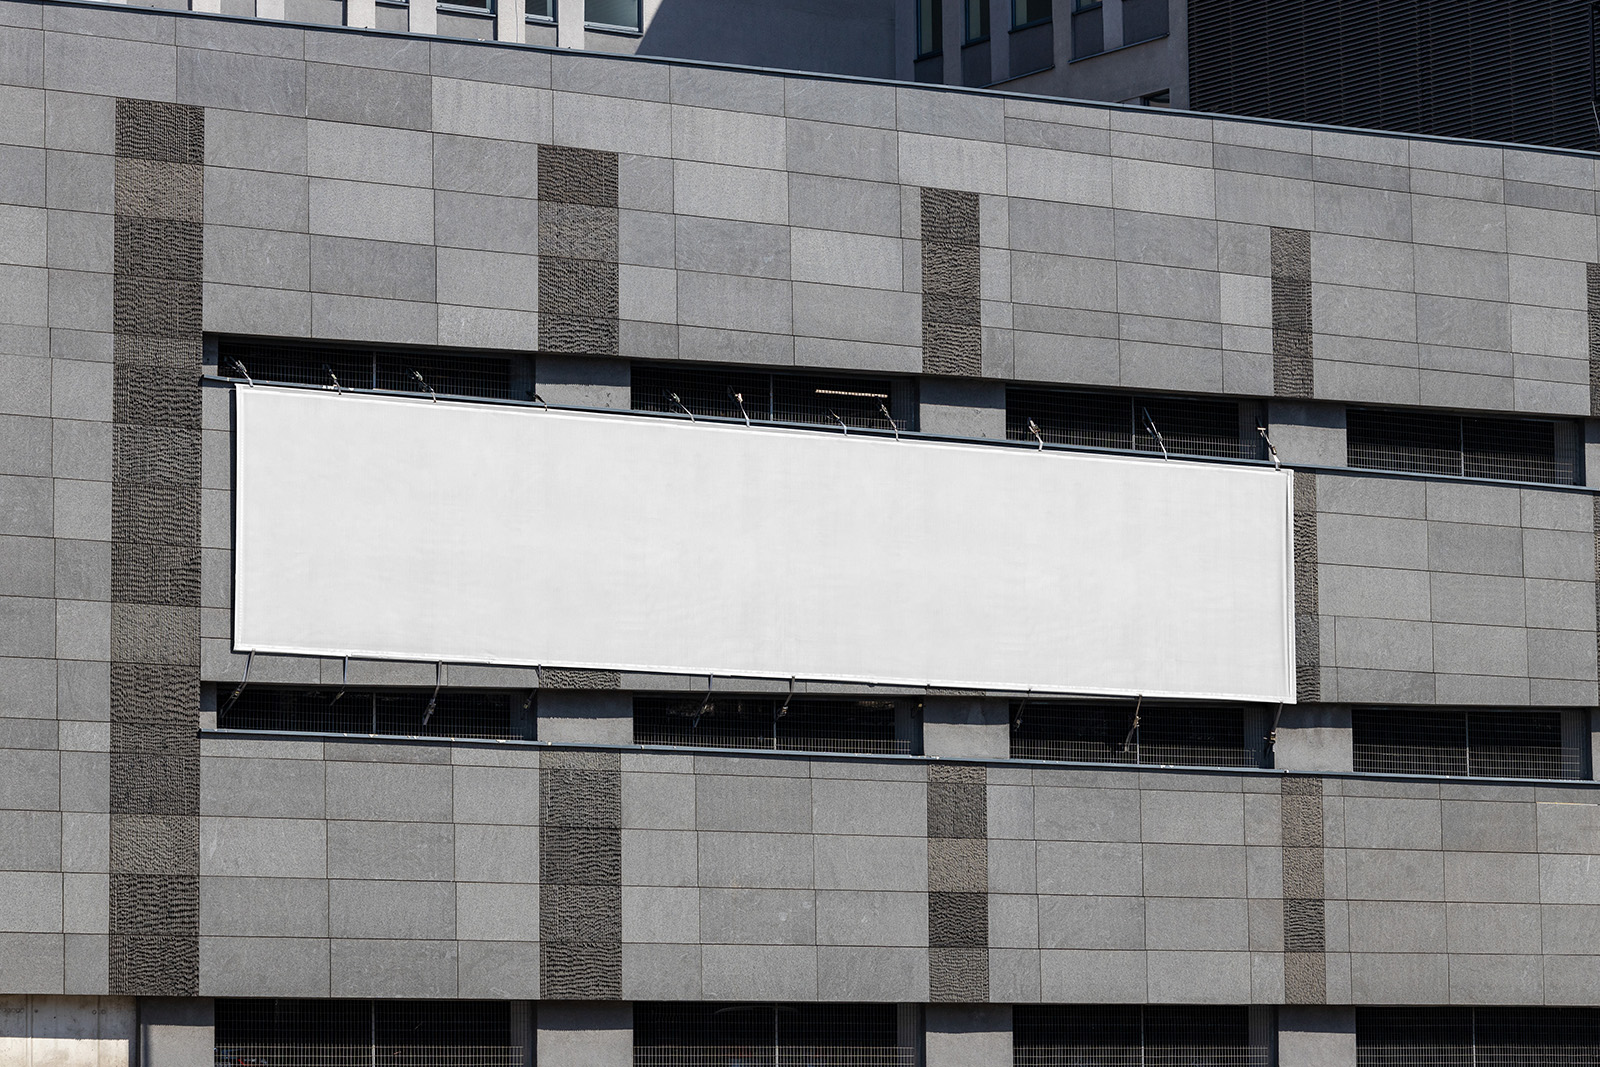 Large banner on grey building mockup